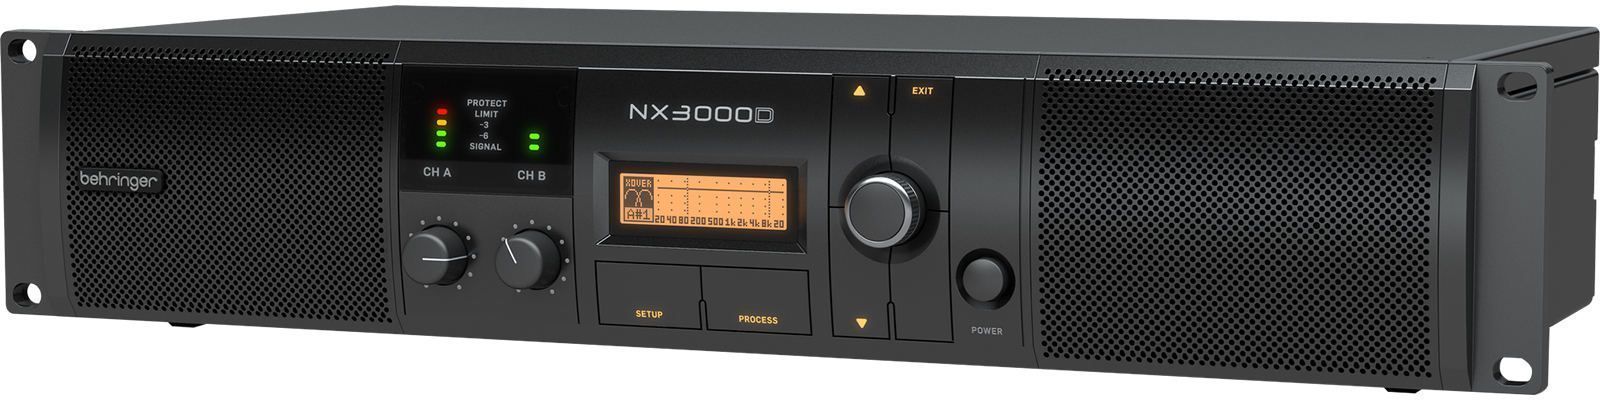 Behringer NX3000D - фото 2